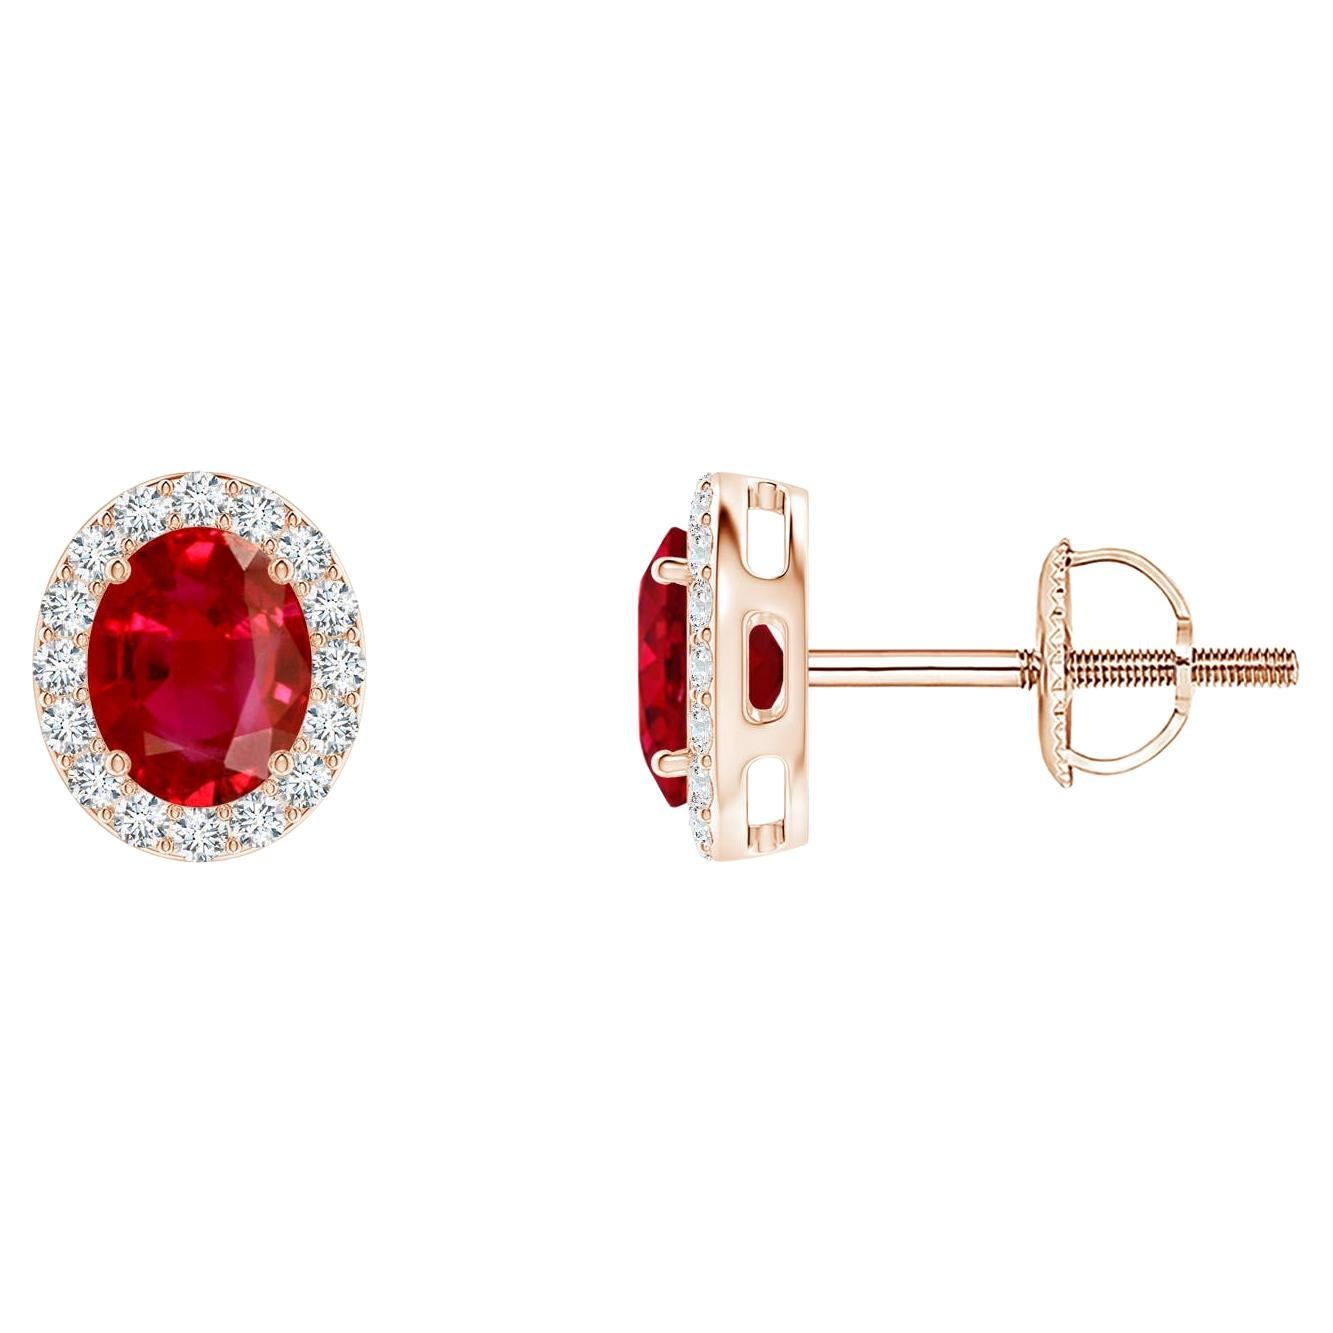 ANGARA clous de rubis ovales naturels de 0,80 carat avec halo de diamants en or rose 14 carats